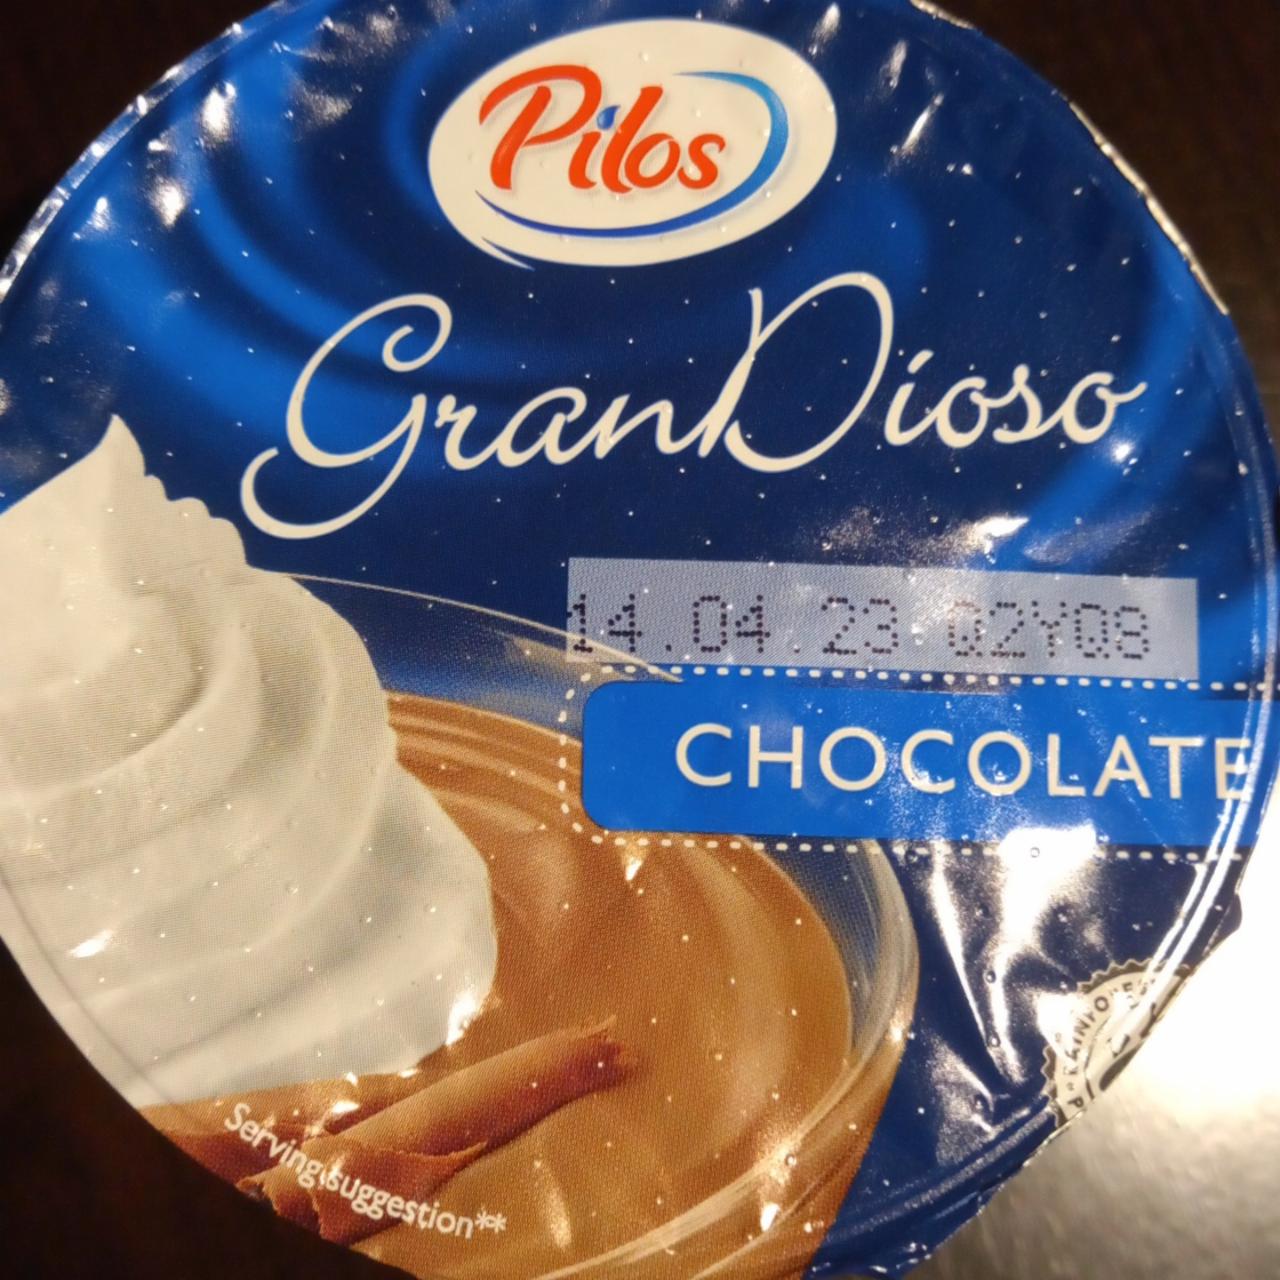 Zdjęcia - Gran dioso czekoladowy Pilos